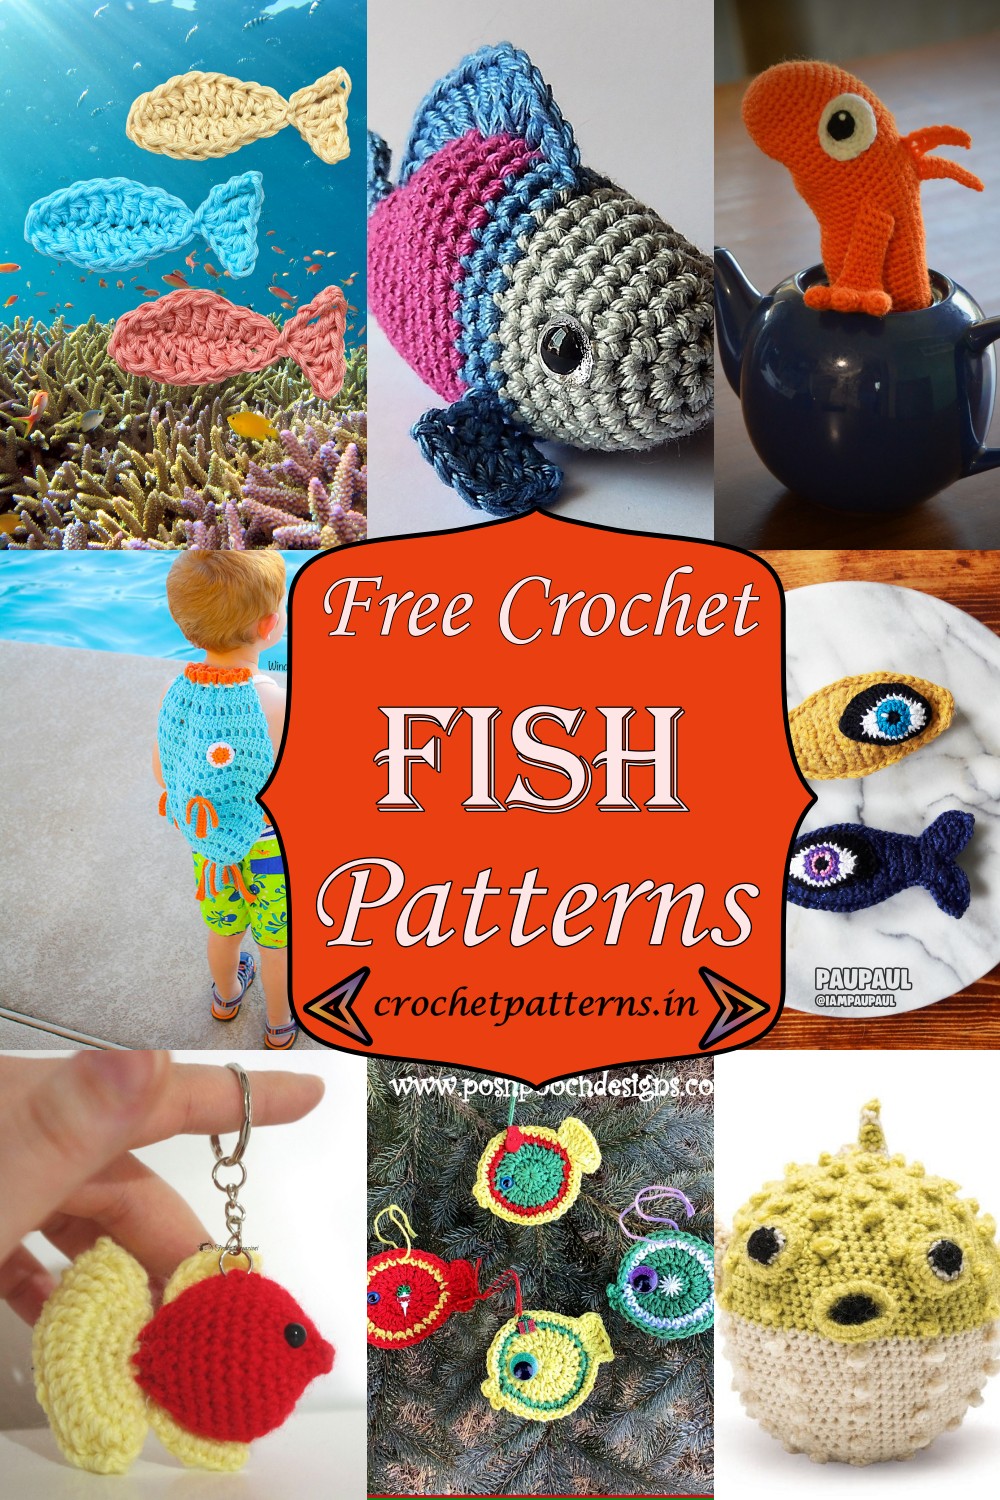 Free Crochet Fish Patterns